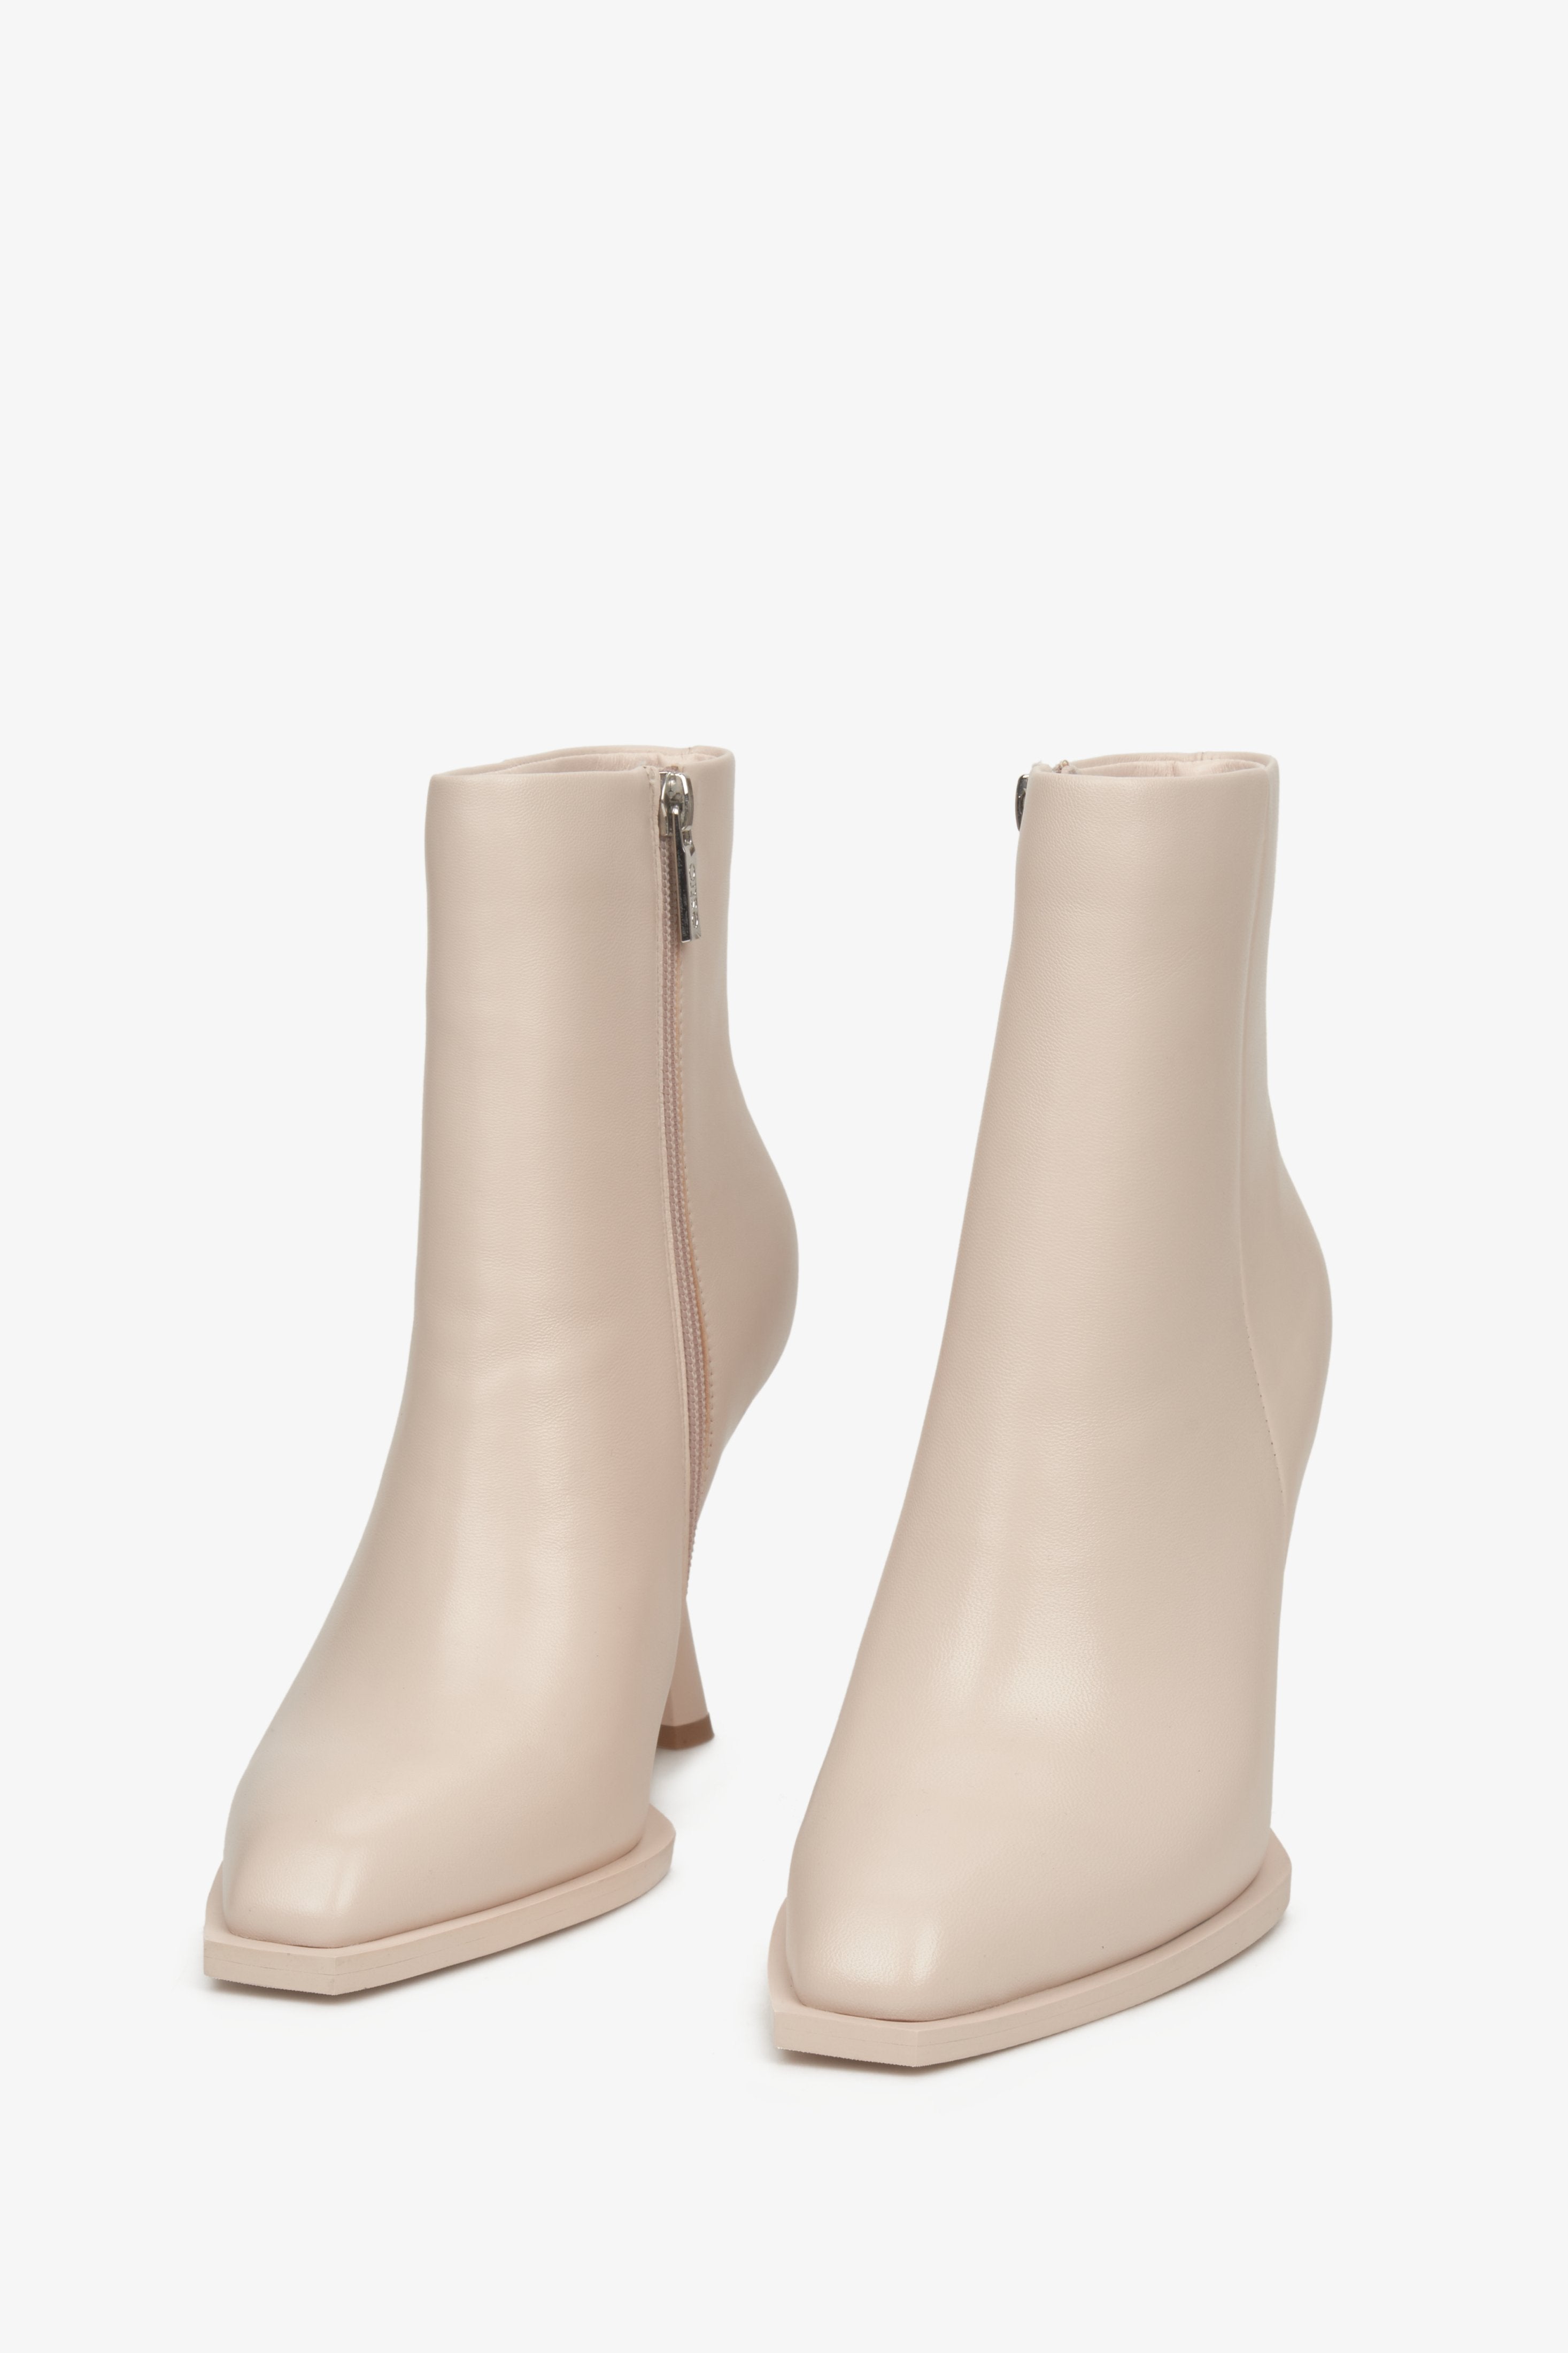 Beżowe, wysokie botki damskie na szpilce marki Estro - zbliżenie na przód buta.